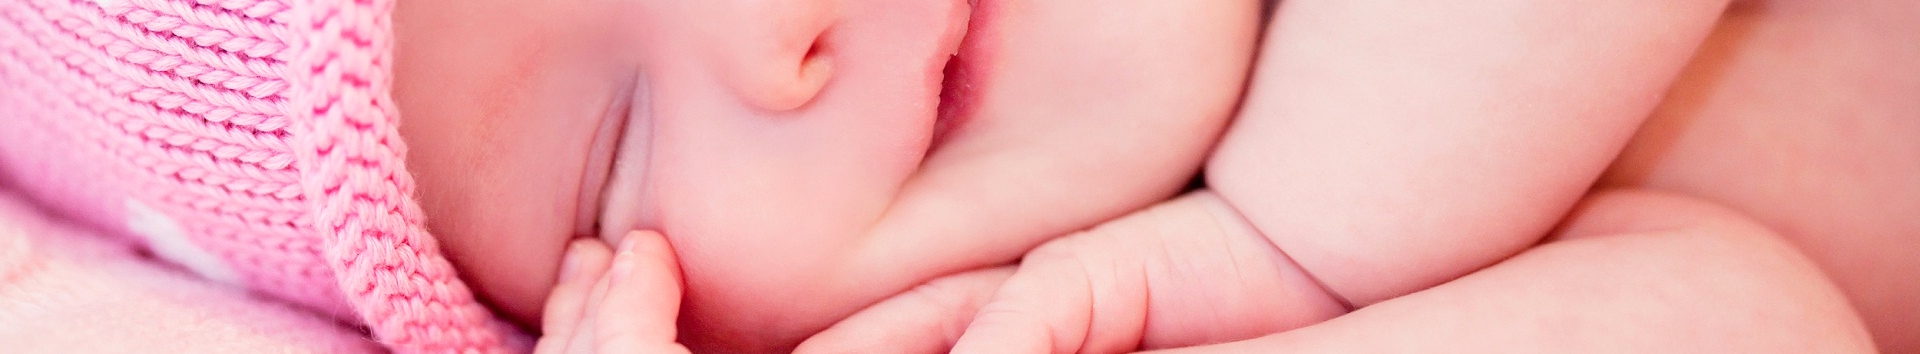 Veja a tabela do sono do bebê exclusiva da Dual Clinic